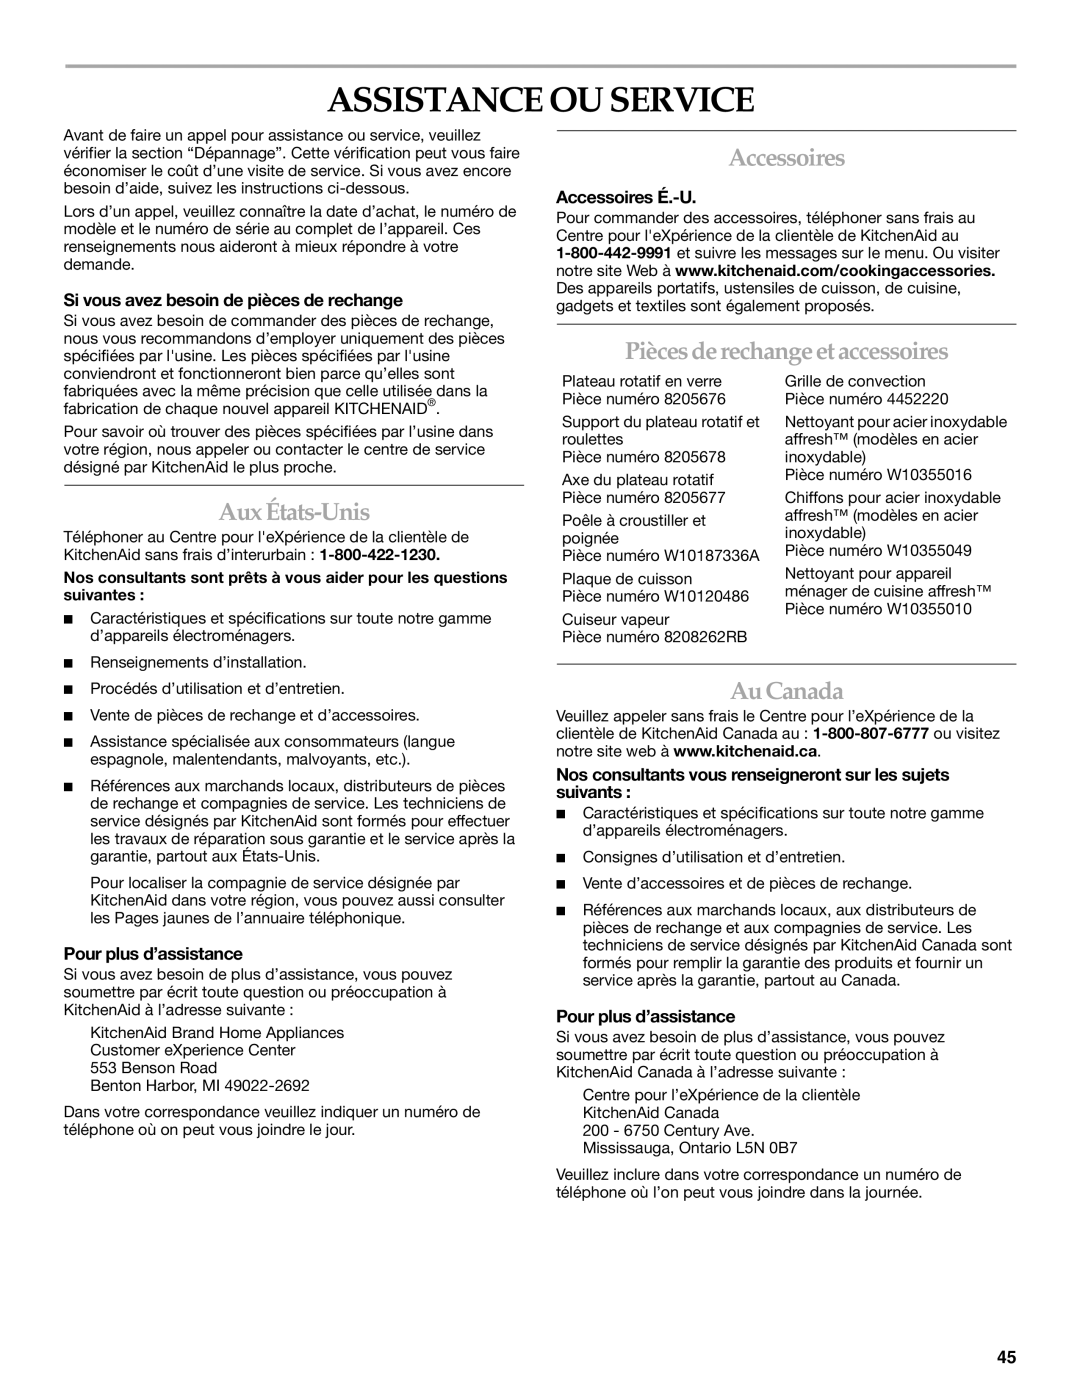 KitchenAid KEMS379B manual Assistance OU Service, Accessoires, Pièces de rechange et accessoires, Aux États-Unis, Au Canada 